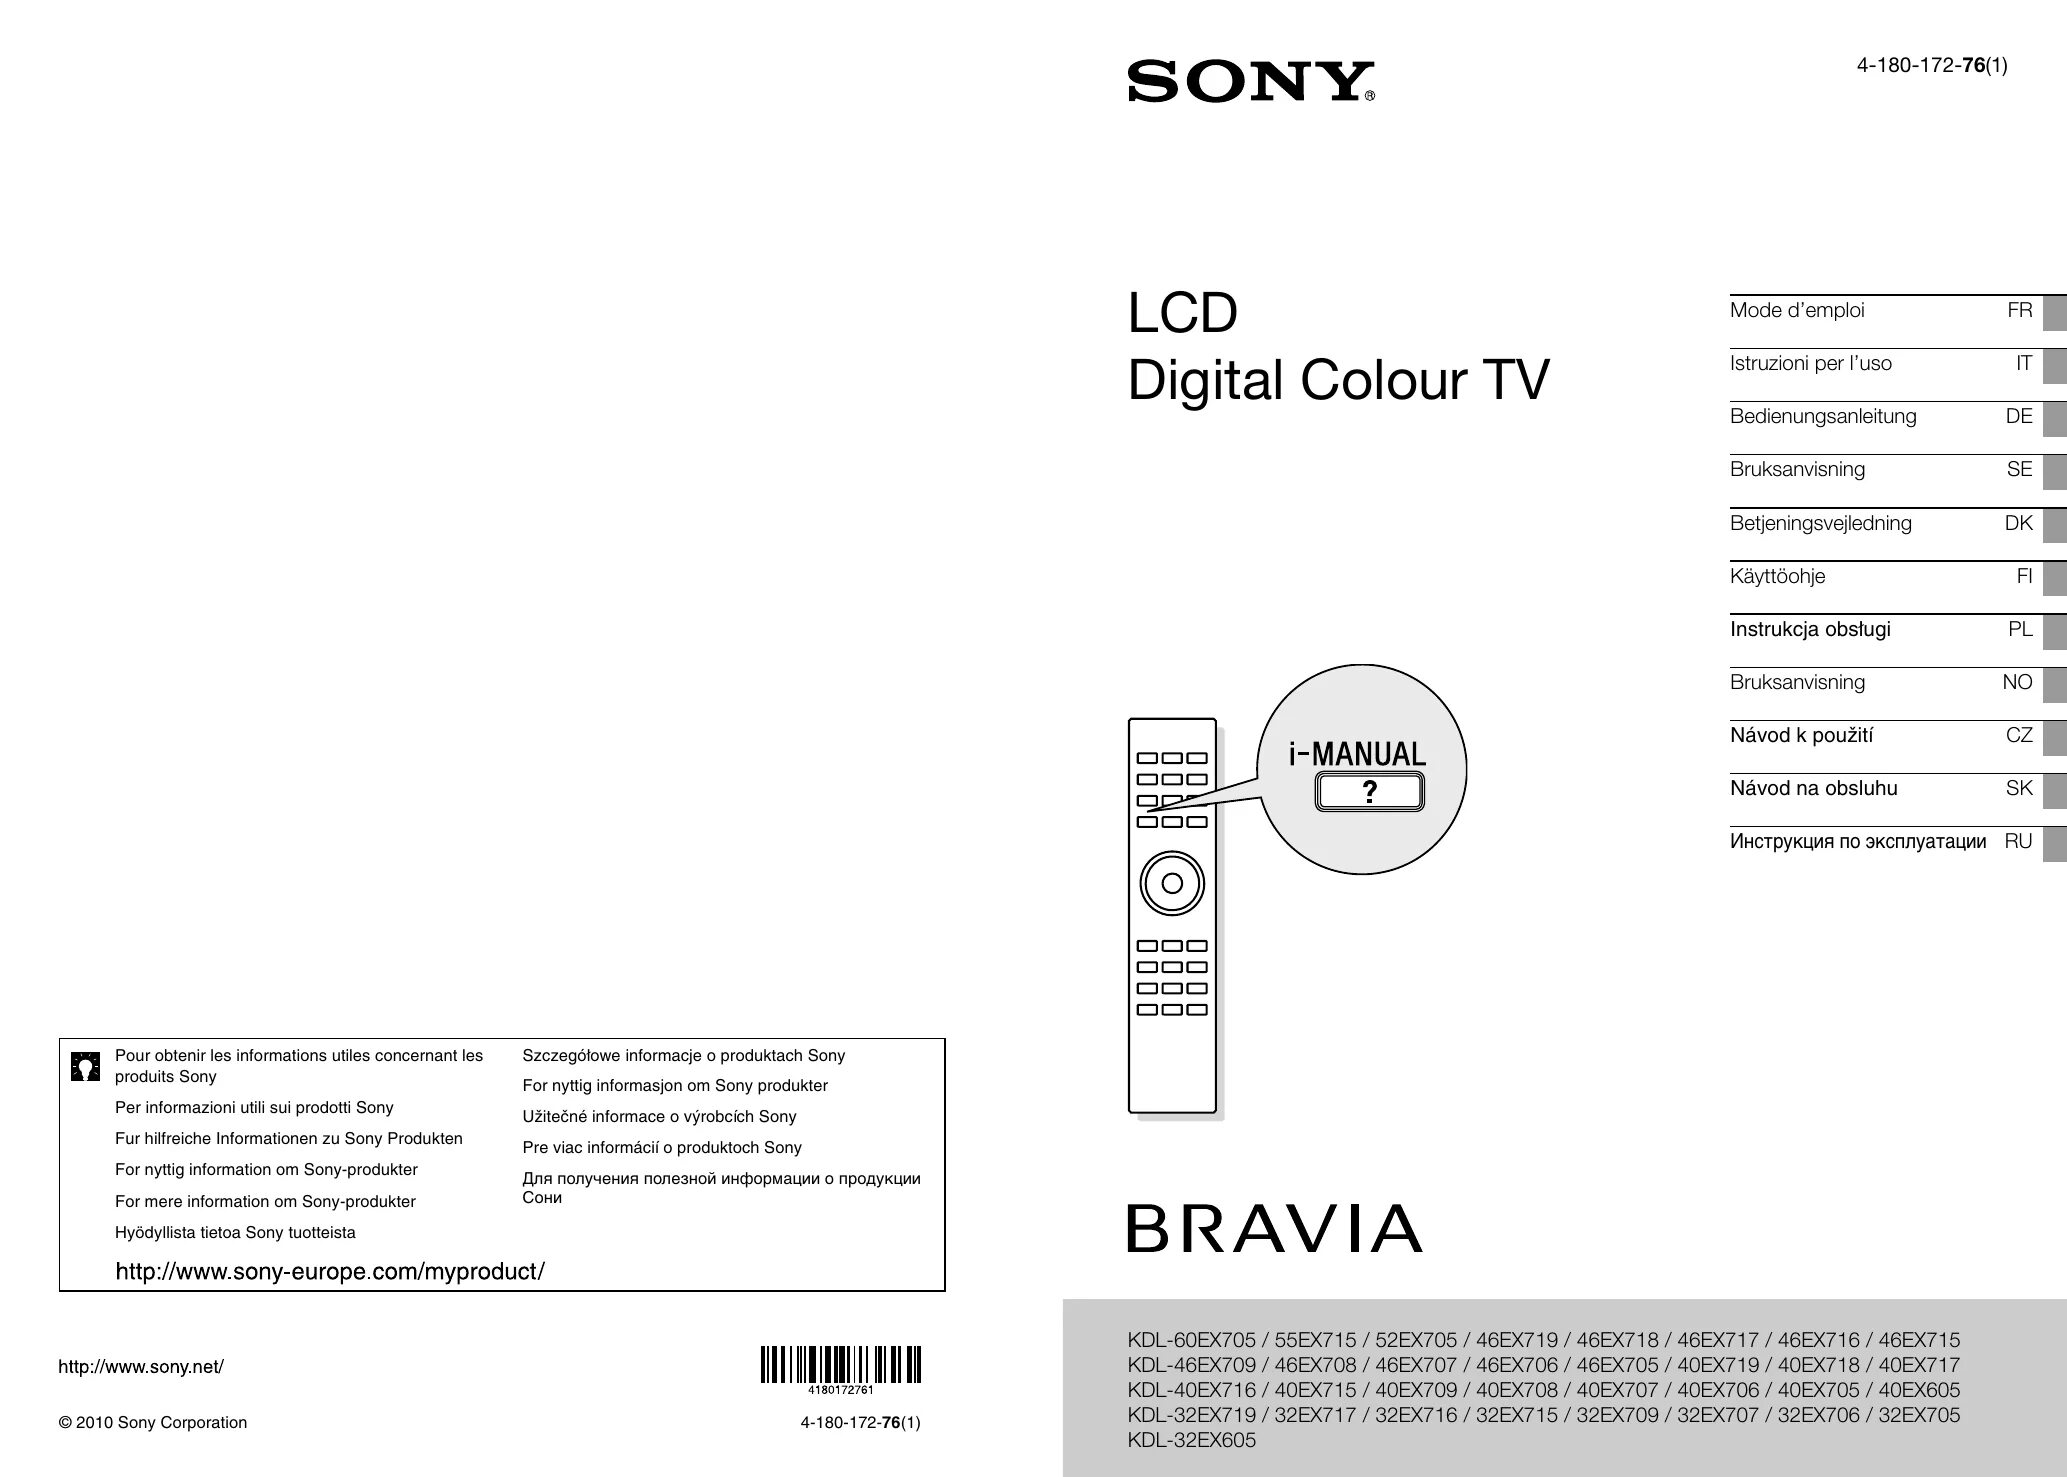 Бравиа кдл. Sony ex 605. Sony KDL-40cx521. Sony Bravia KDL-40ex605. Sony Bravia v4500.